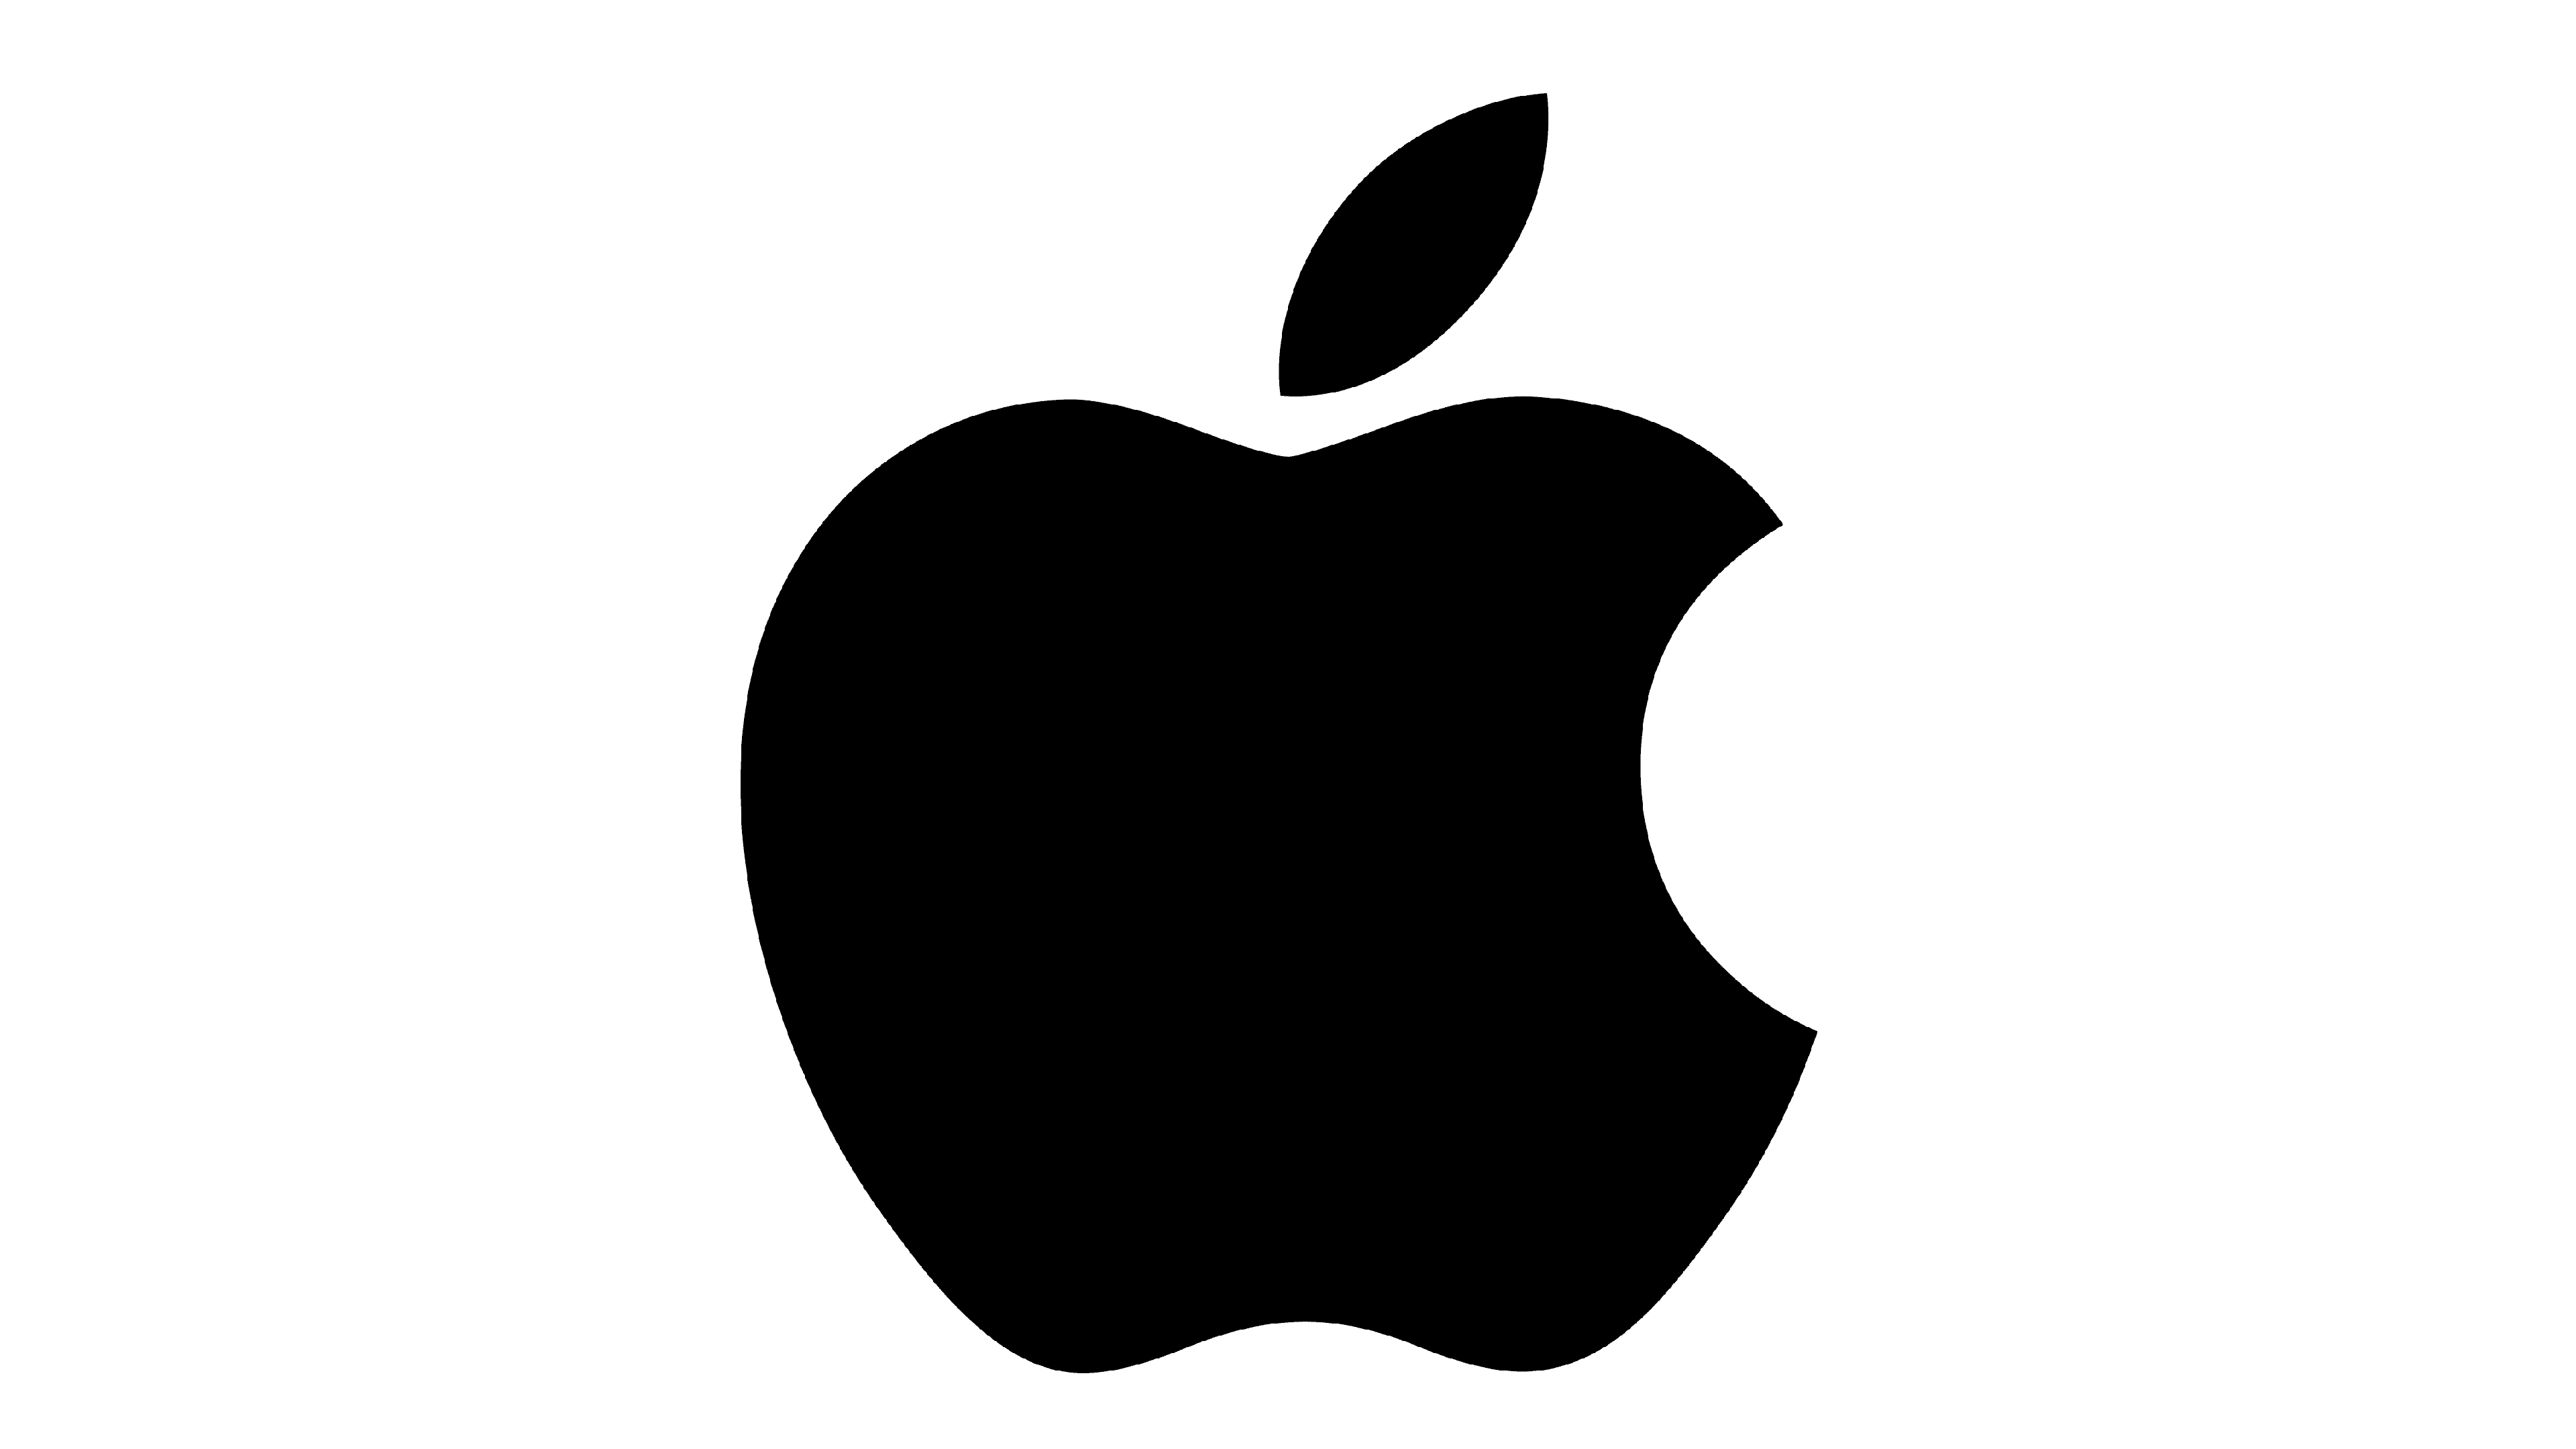 Pictures Of The Apple Logo - KibrisPDR